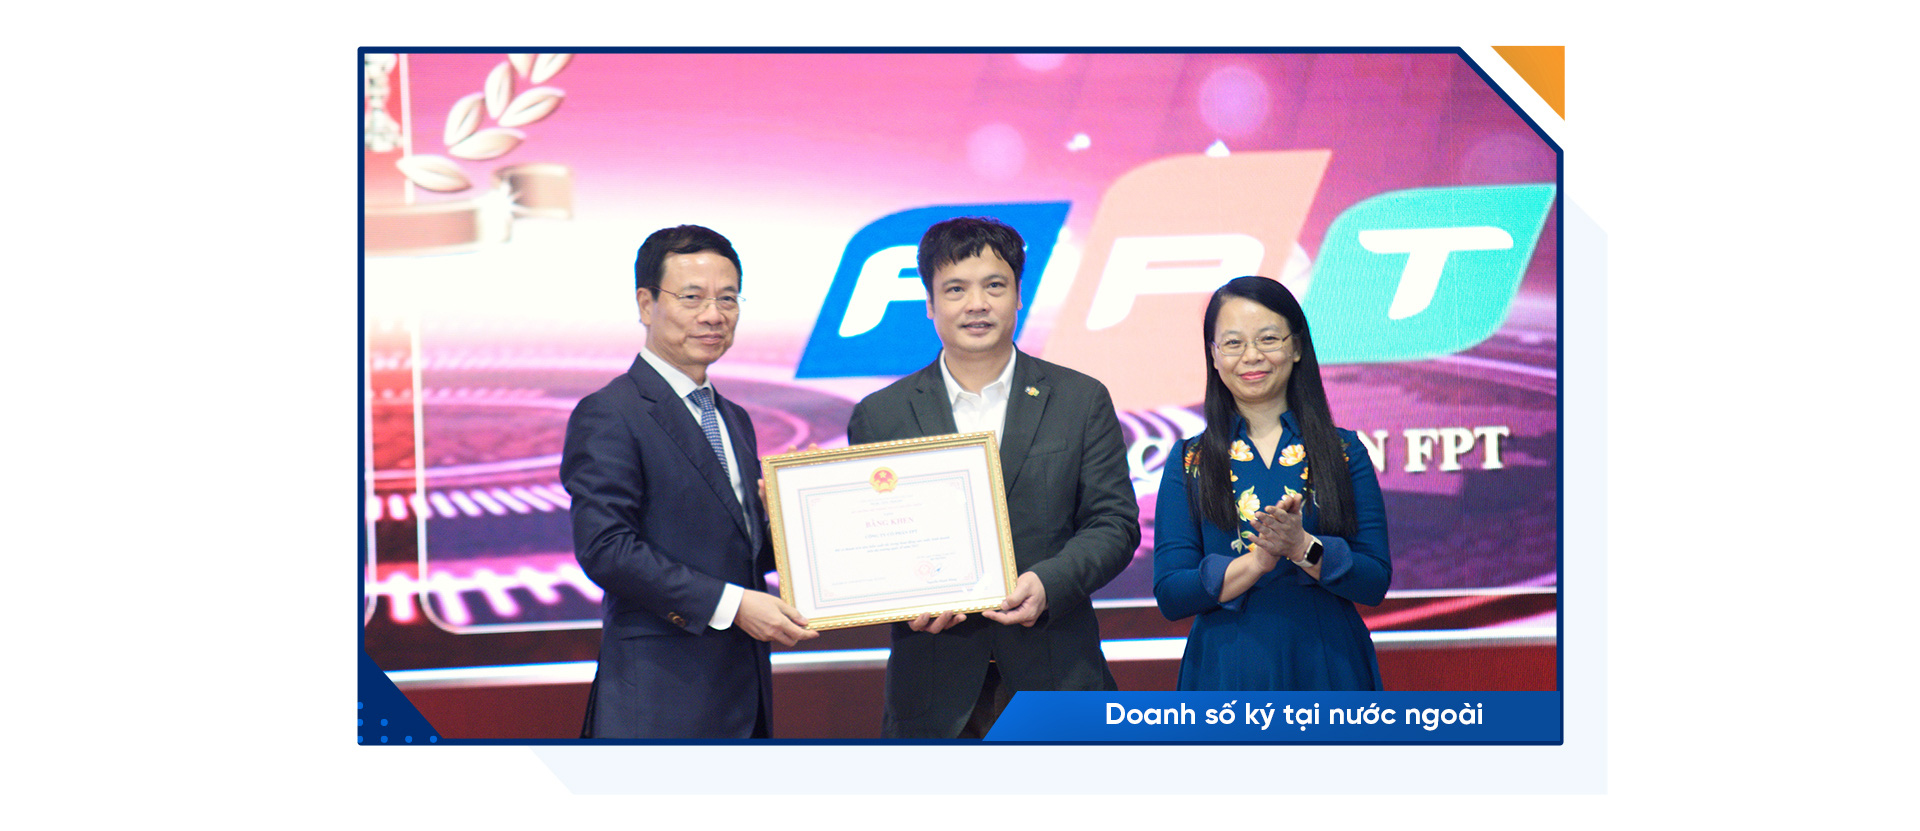 CEO FPT Nguyễn Văn Khoa: Thành công của FPT có rất ít từ sự may mắn - Ảnh 13.